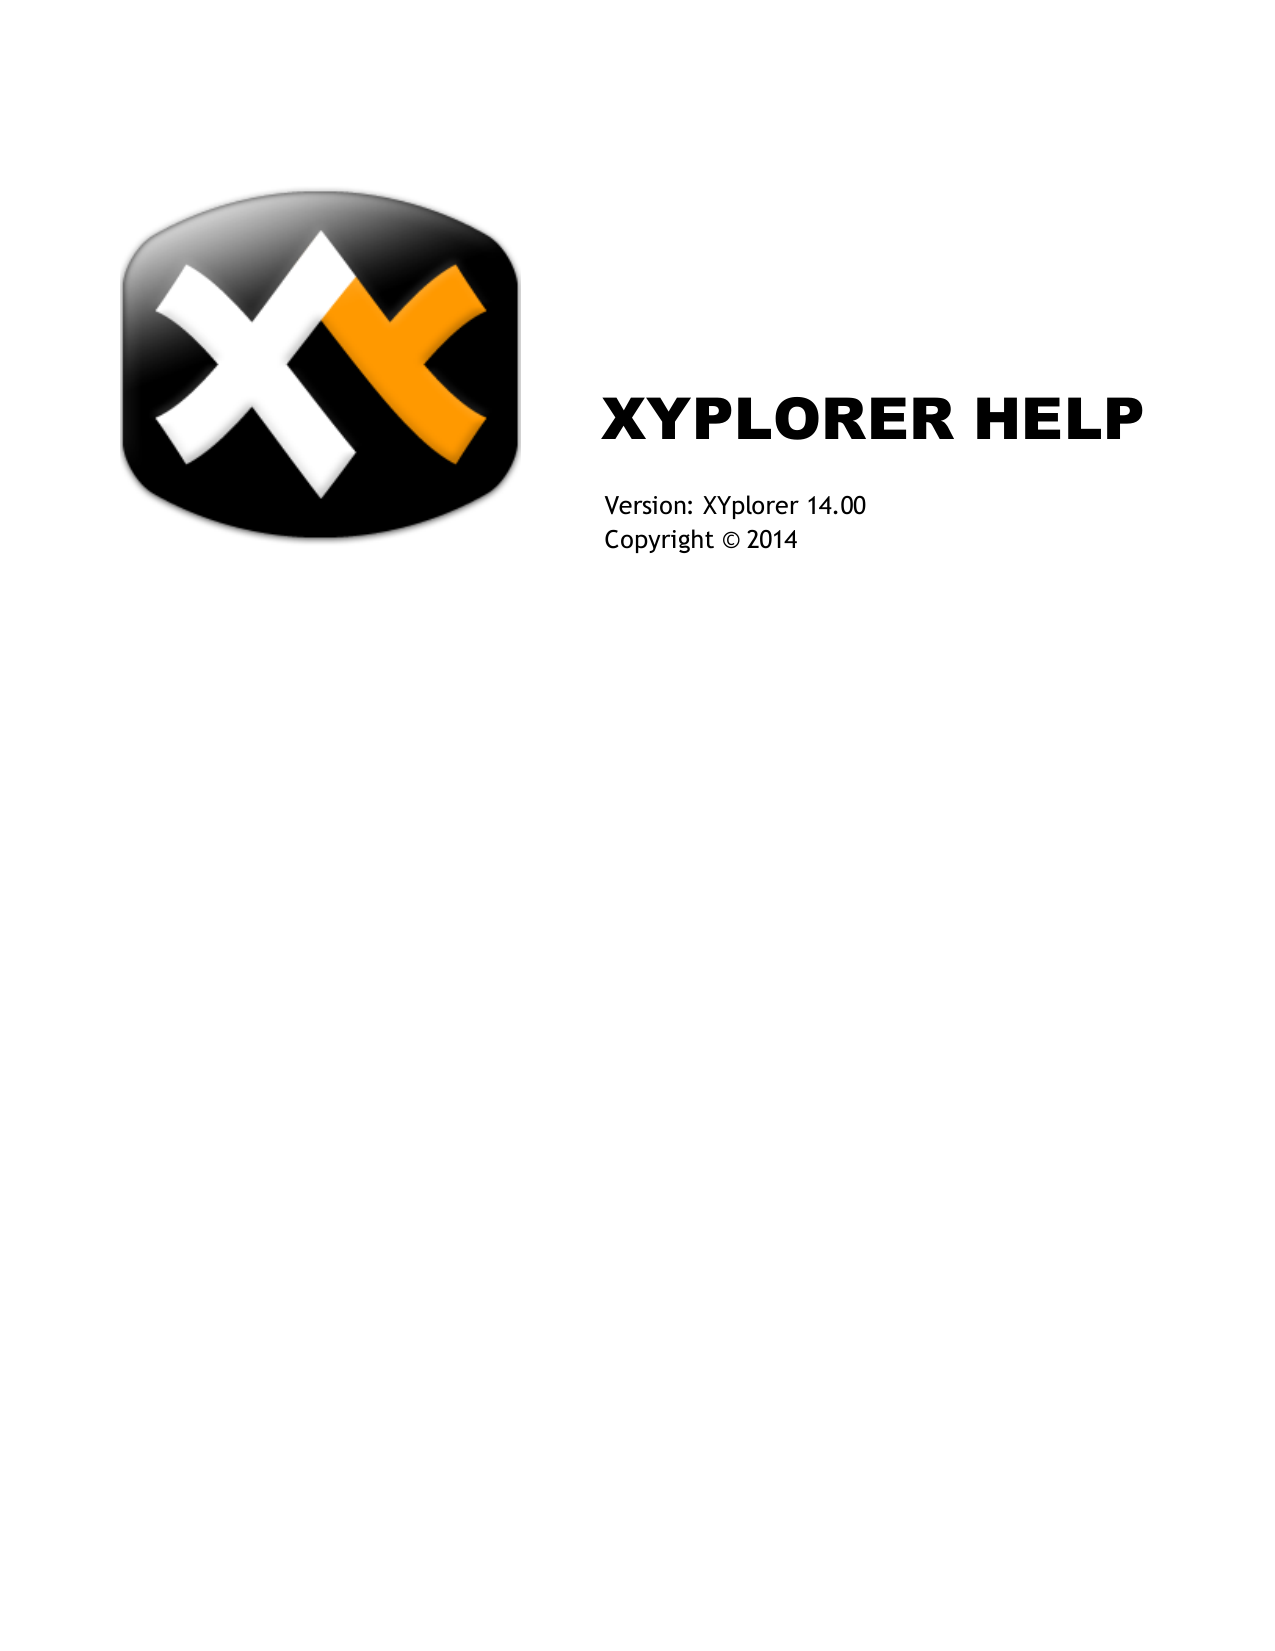 Download Xyplorer Help Manualzz